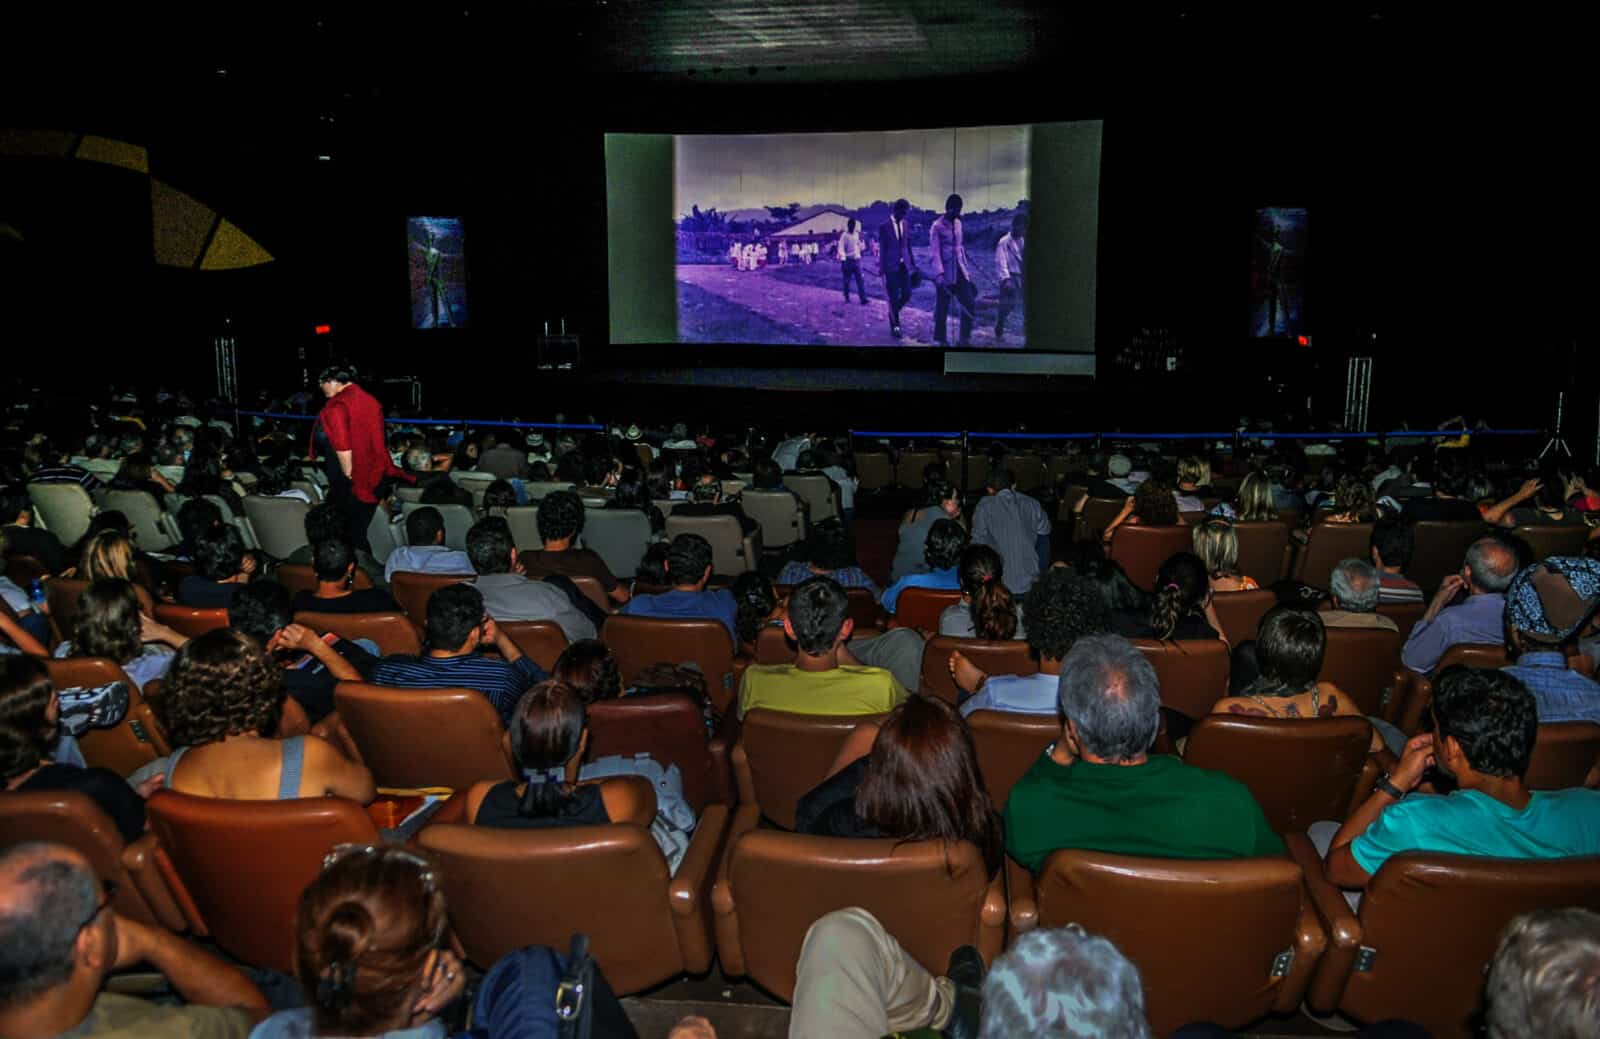 São Paulo (SP) - Mostra Internacional de Cinema exibe 360 filmes na capital paulista Evento começa em 19 de outubro e vai até 1º de novembro. Foto: Renato Araujo/Agência Brasil